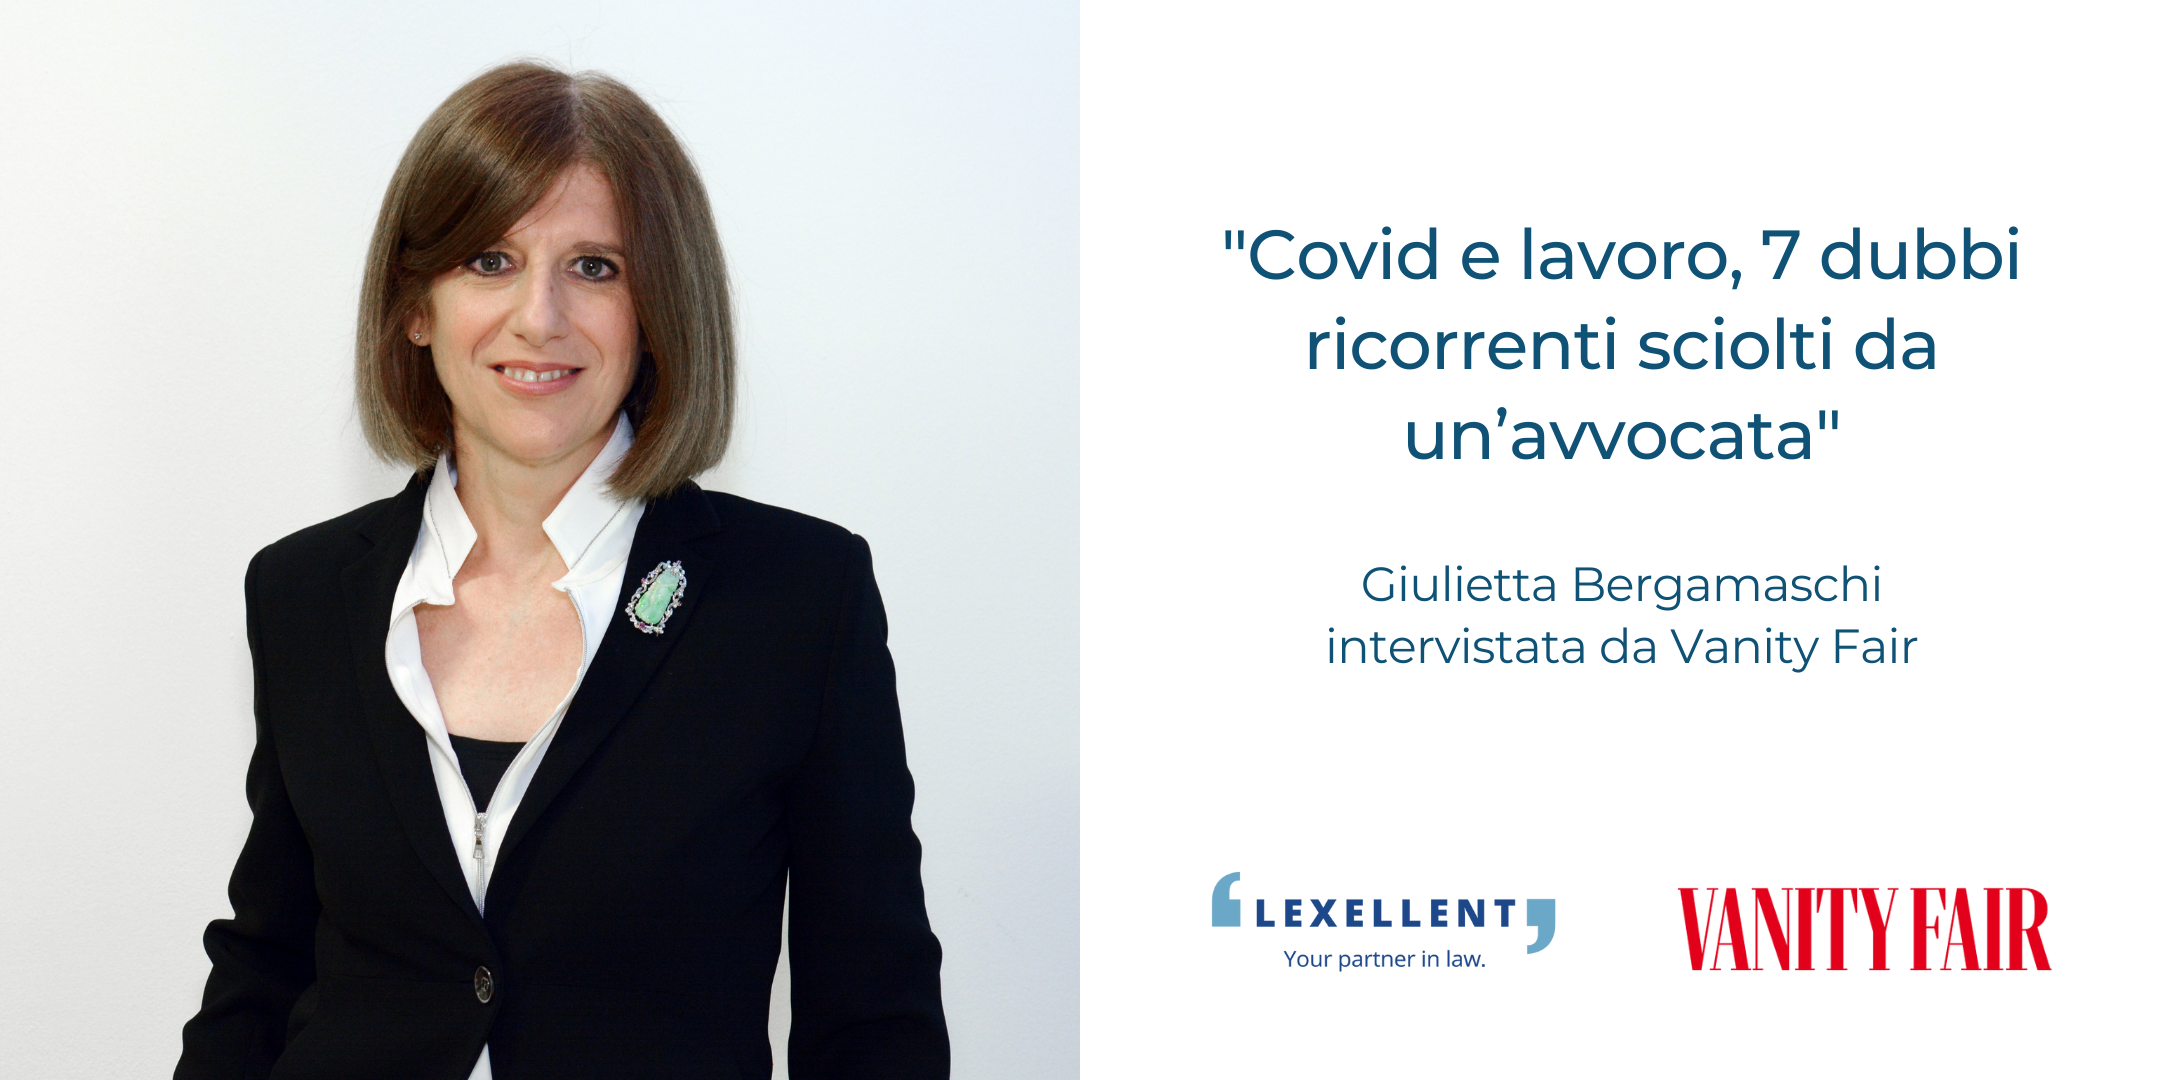 “Covid e lavoro, 7 dubbi ricorrenti sciolti da un’avvocata”, l’intervista a Giulietta Bergamaschi su Vanity Fair